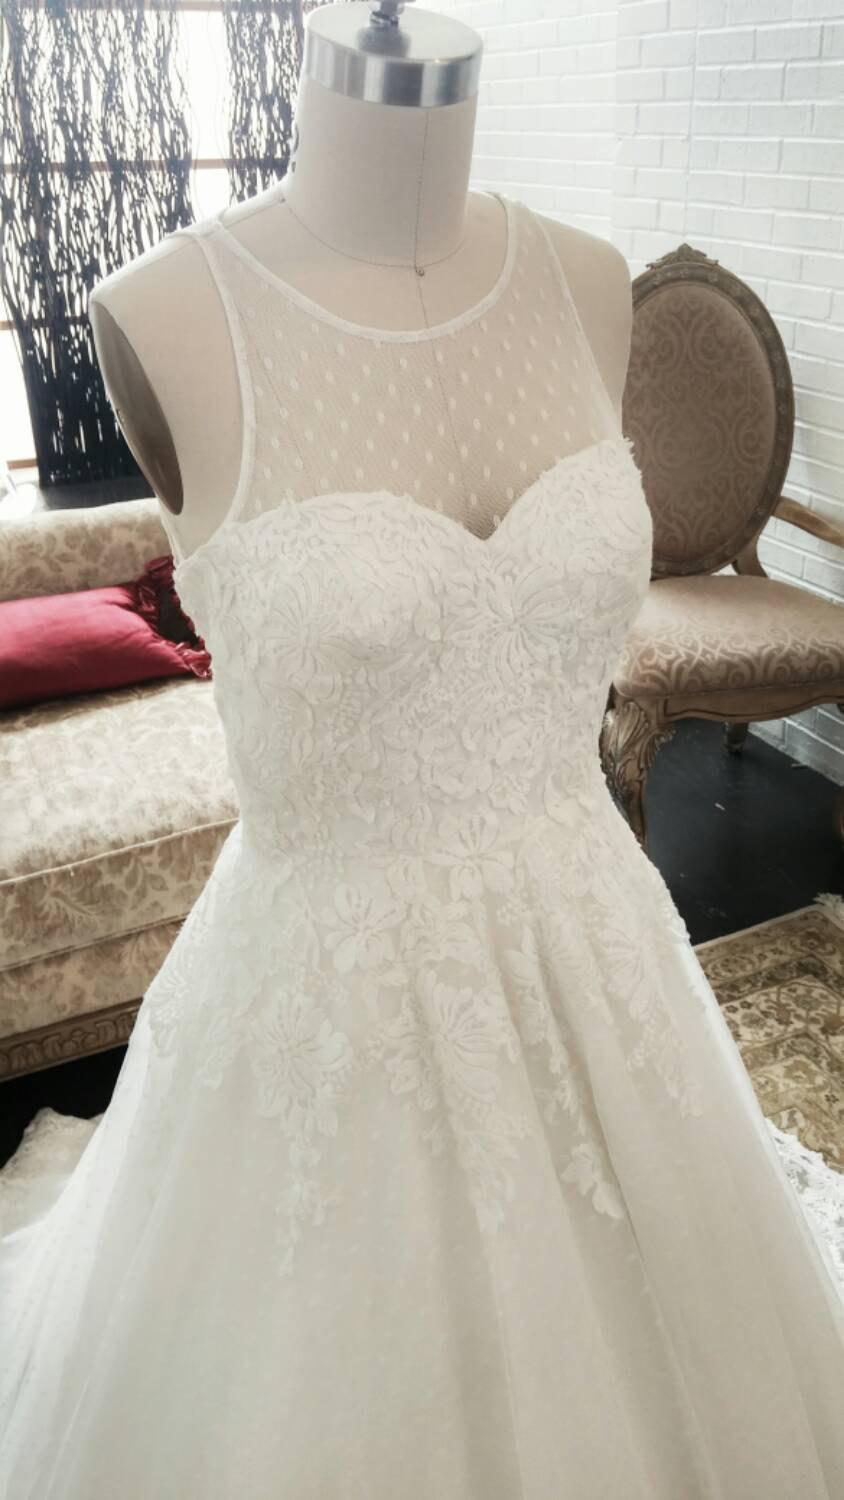 زفاف - Unique Swiss Dot Vintage Wedding dress With Lace Details, A-line Wedding Dress, Lace Wedding Dress, Unique Wedding Dress, Vintage Wedding